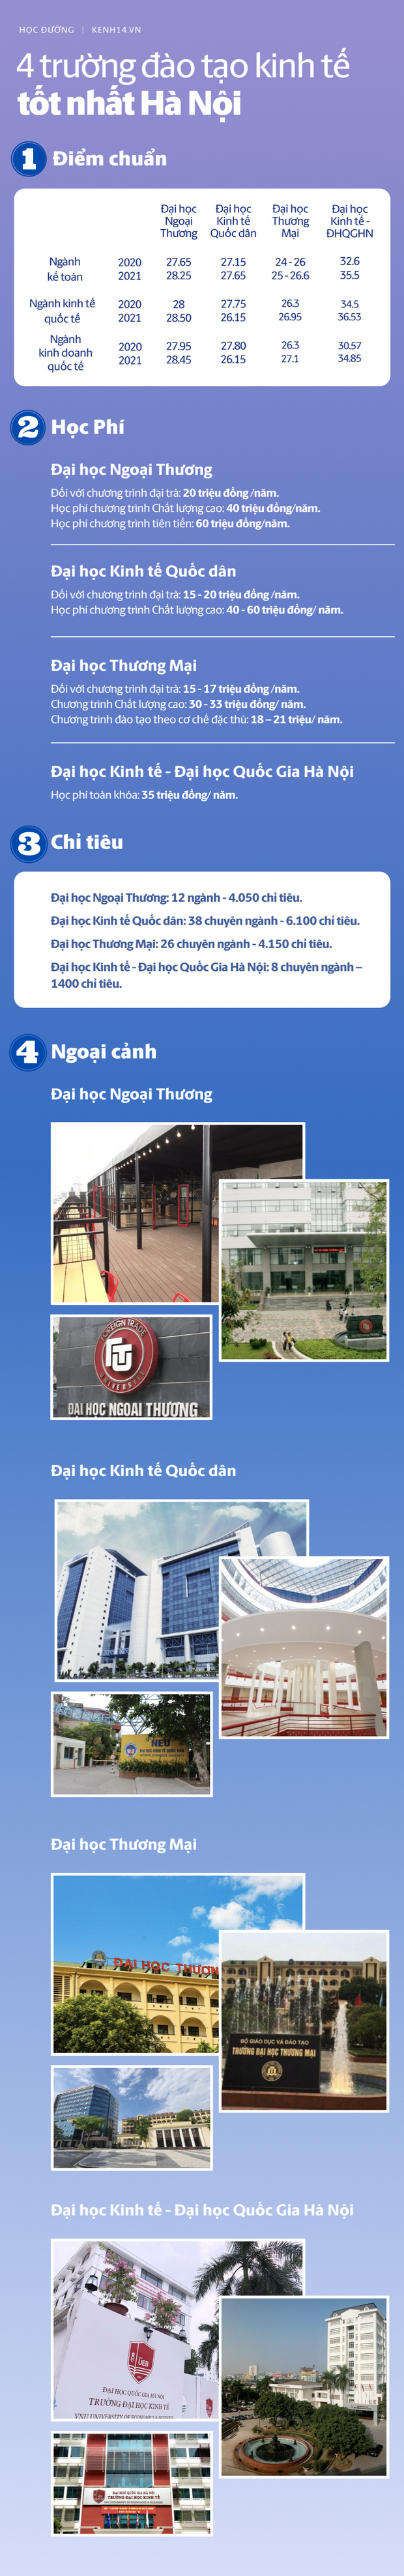 Top trường đào tạo Kinh tế tốt nhất ở Hà Nội: Ngoại thương hay Kinh tế quốc dân xịn hơn? - Ảnh 1.